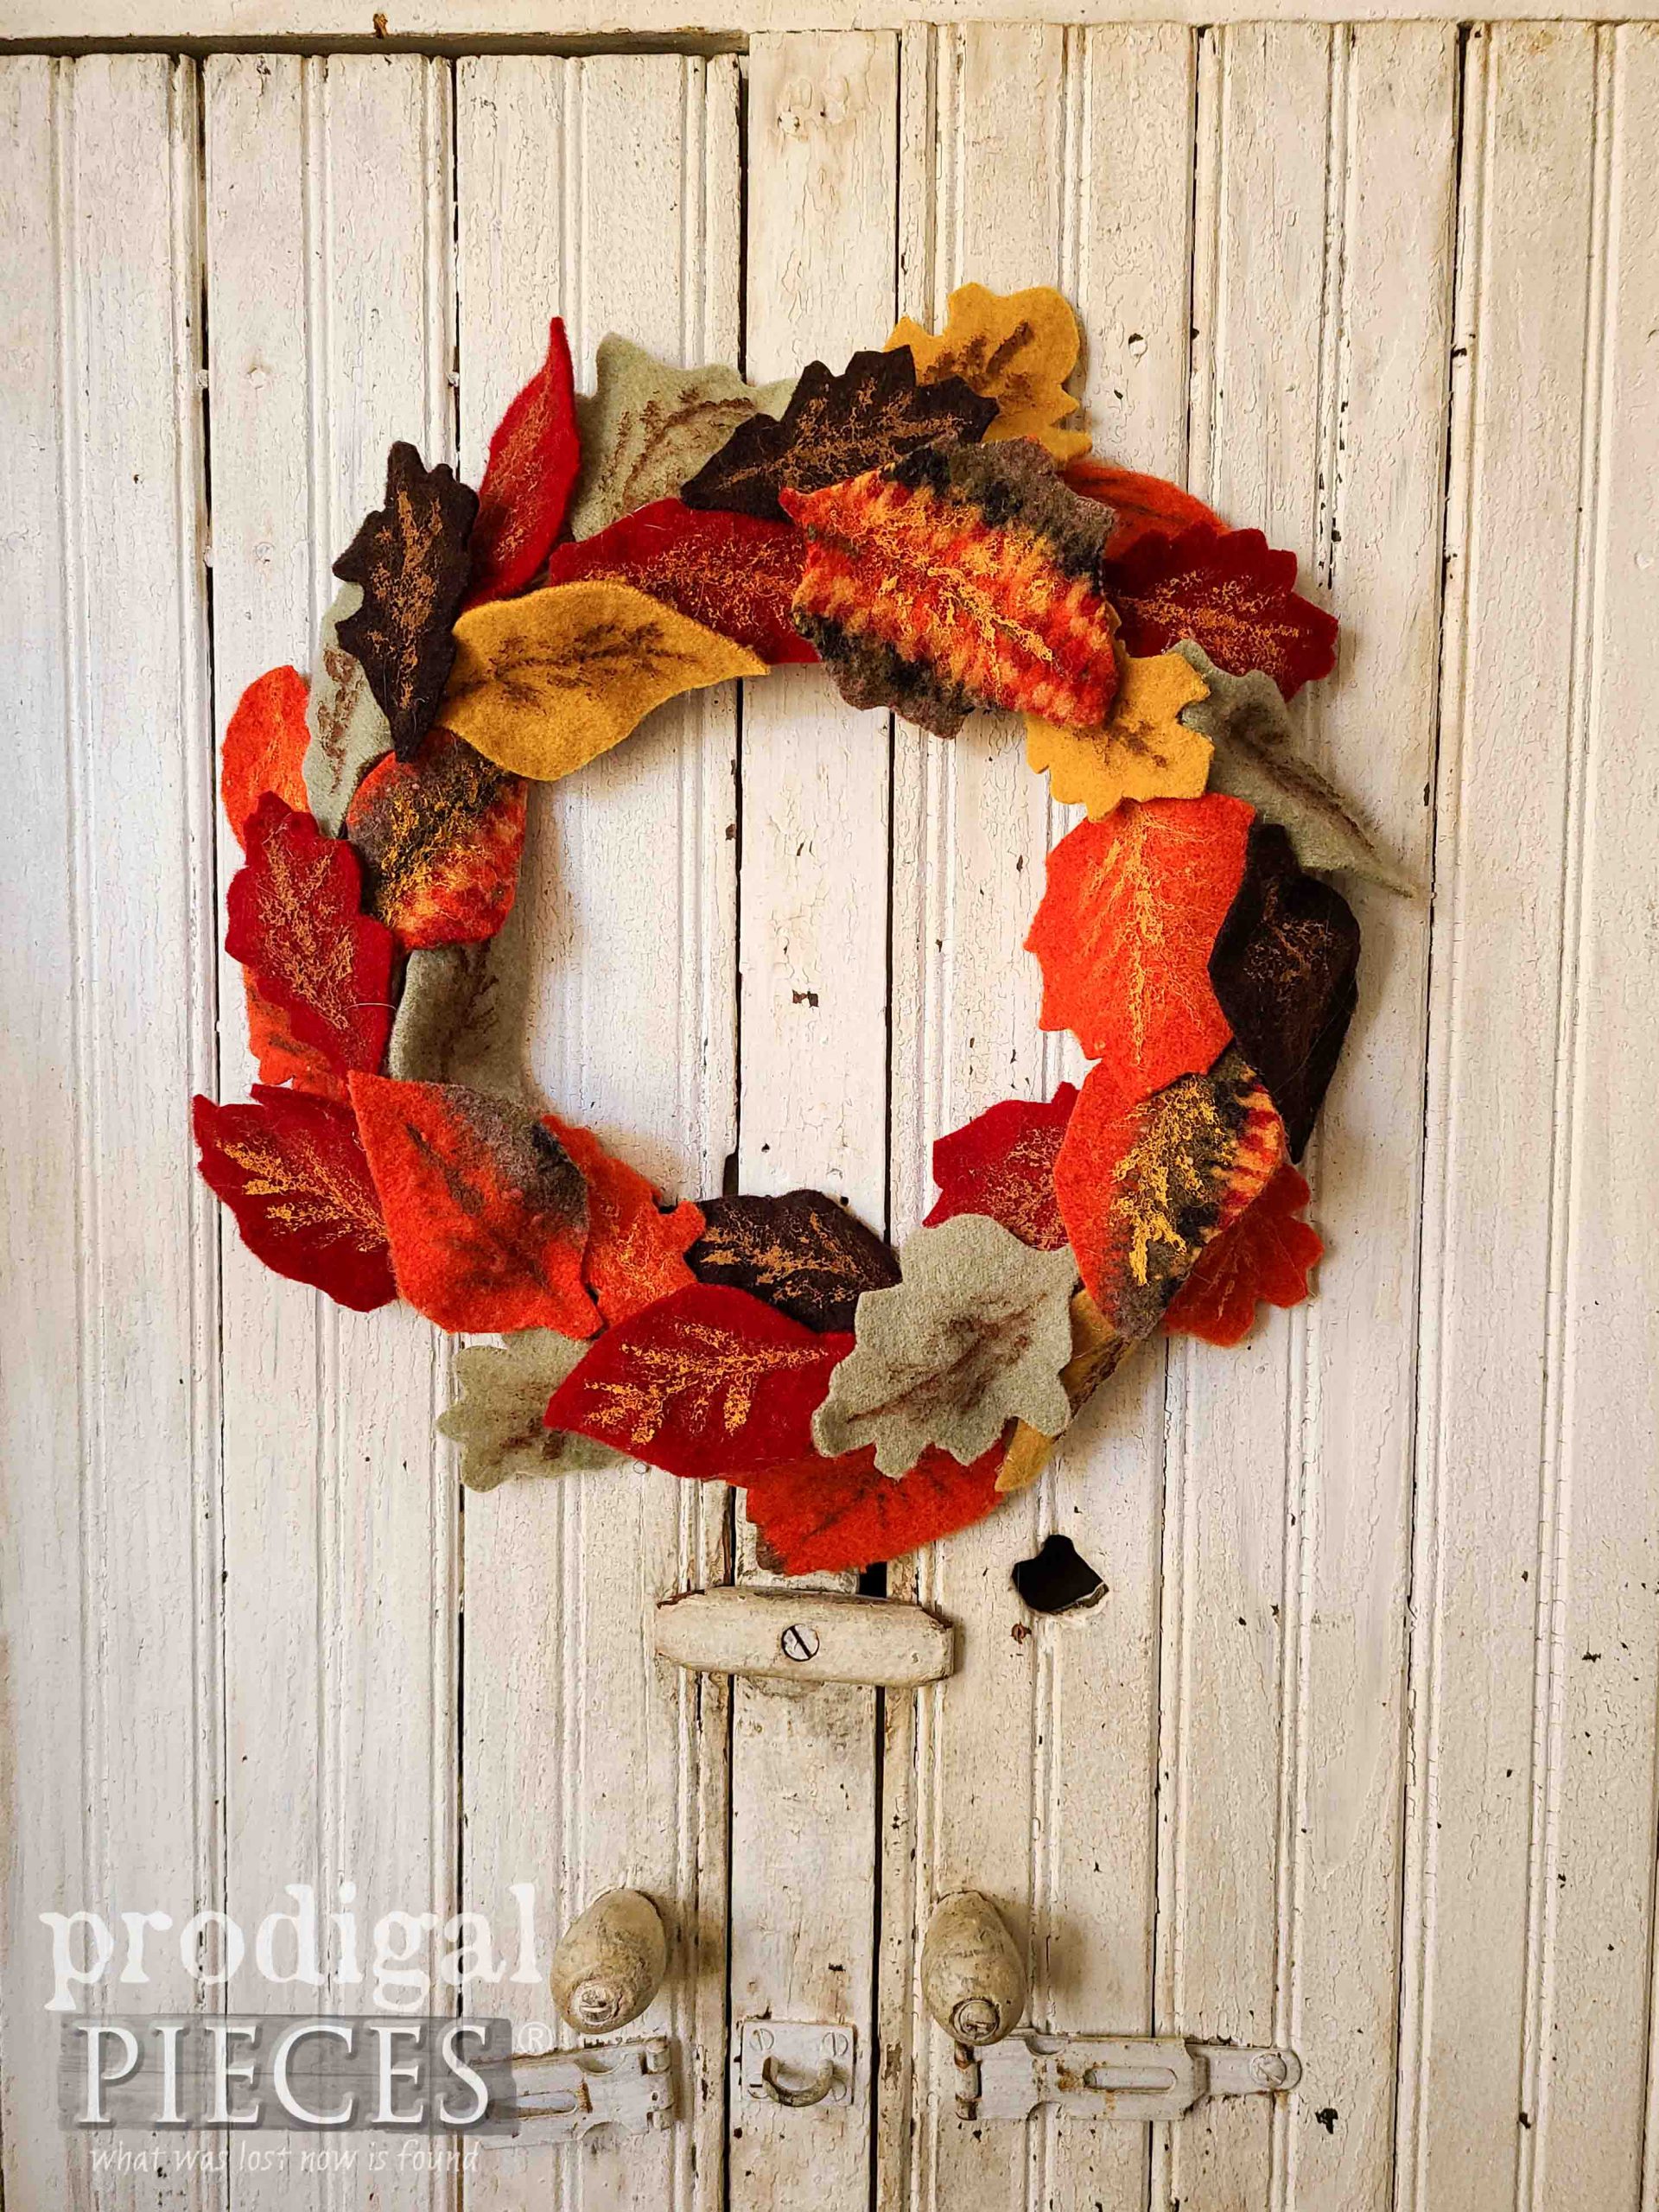 DIY Felt Fall Wreath Tutorial by Larissa of Prodigal Pieces | prodigalpieces.com #prodigalpieces #diy #felt #fall #crafts